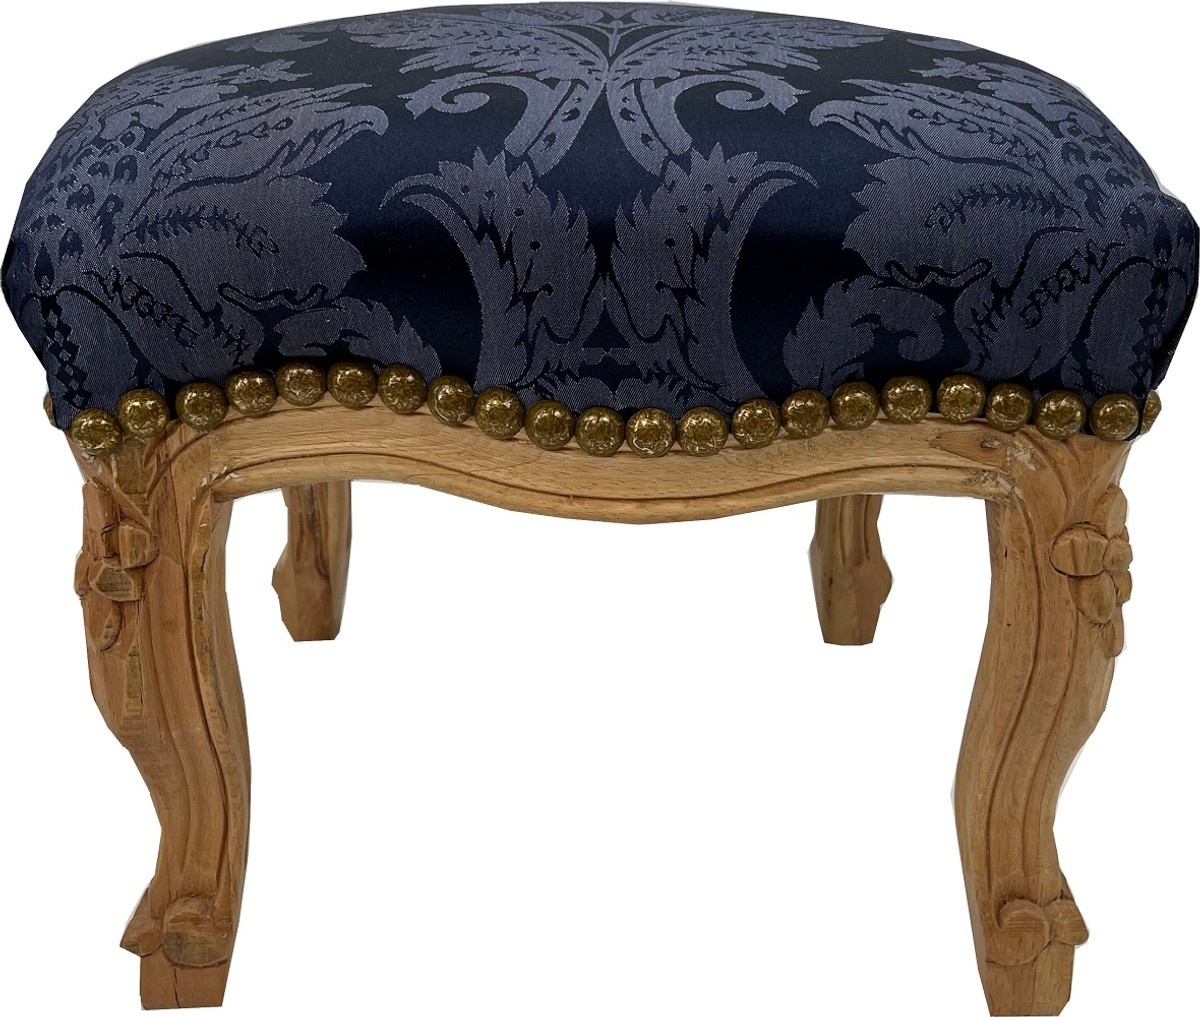 Casa Padrino Barock Fußhocker Royalblau Muster / Naturfarben - Handgefertigter Antik Stil Hocker mit elegantem Muster - Wohnzimmer Möbel im Barockstil - Barock Möbel